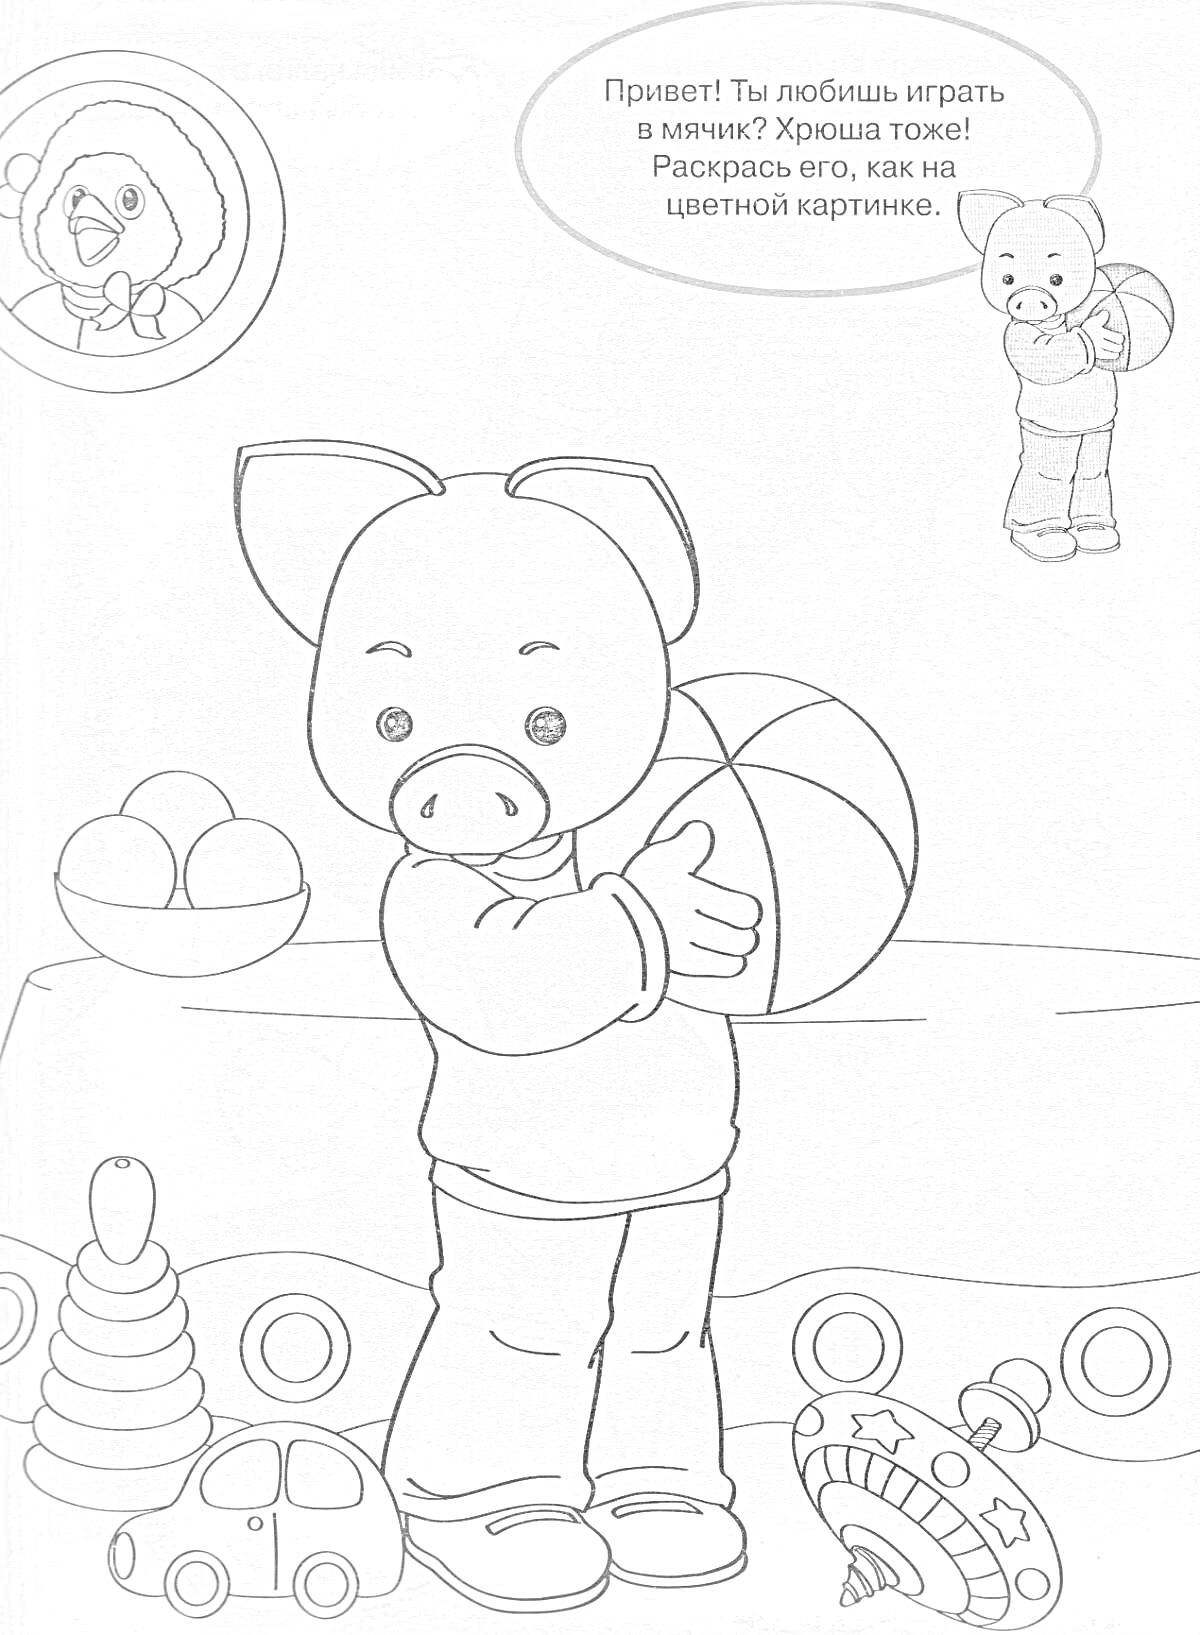 Раскраска Хрюша с мячиком и игрушками: Хрюша с мячом стоит среди игрушек (пирамидка, машинка, погремушка); рядом - тарелка с яблоками и игрушечный паровозик, на заднем плане - рамка с изображением героя в бабочке и диалоговым окном.